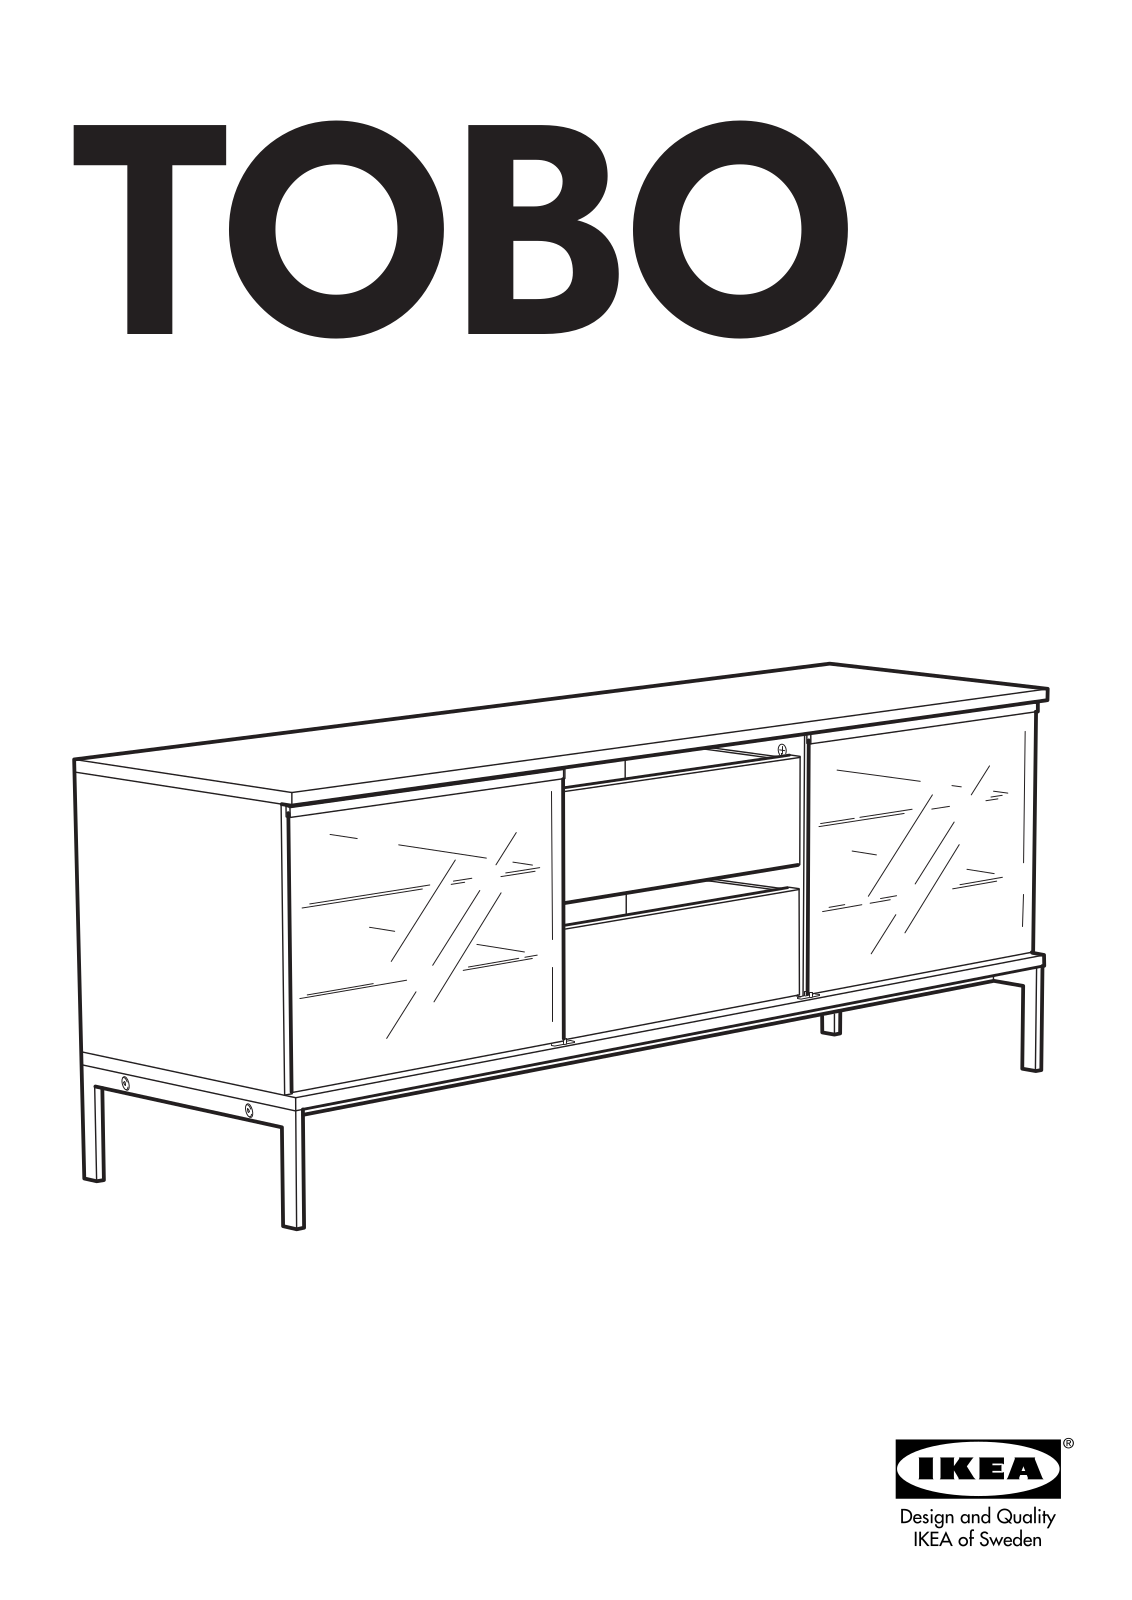 IKEA TOBO User Manual